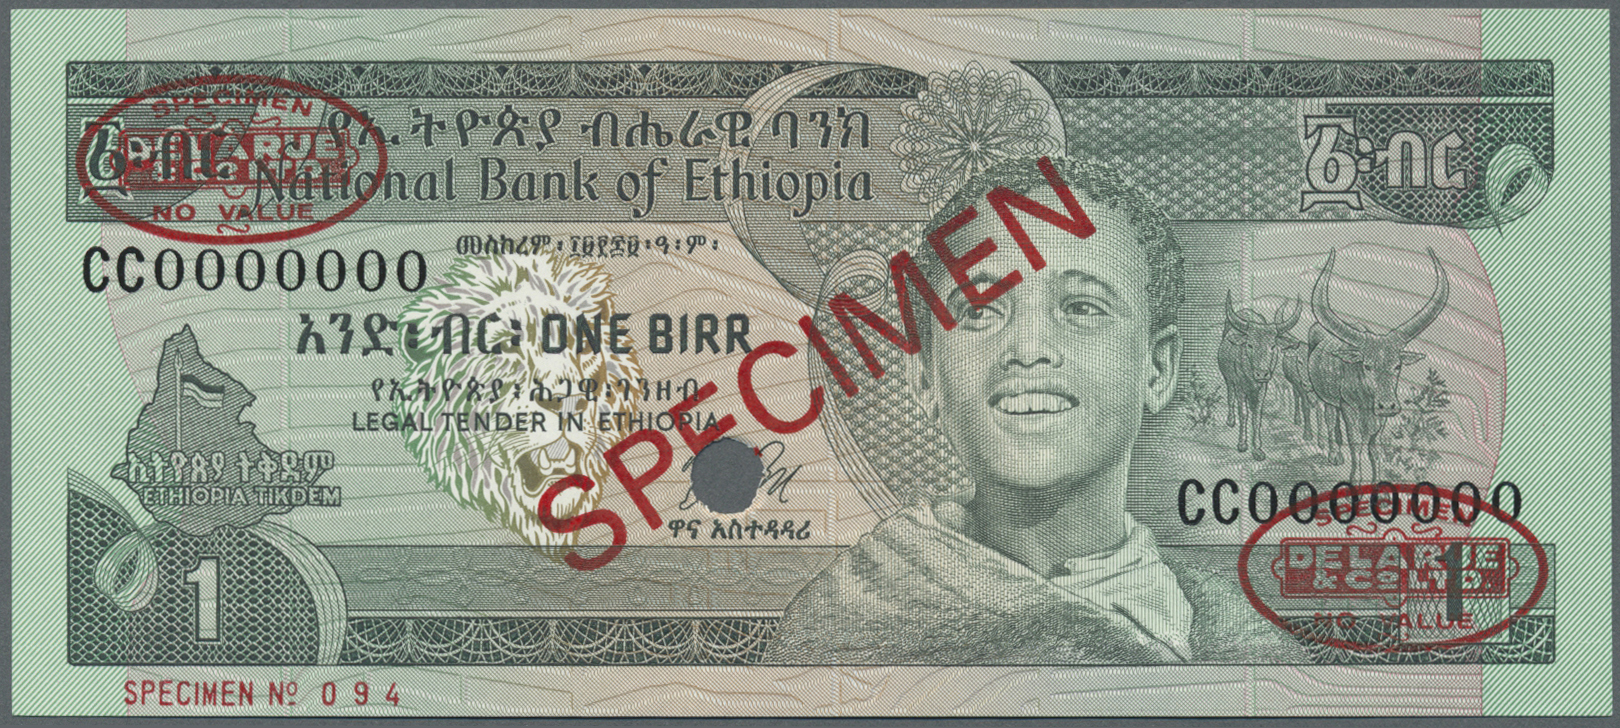 00737 Ethiopia / Äthiopien: 1 Birr 1991 Specimen P. 30s In Condition: UNC. - Ethiopia